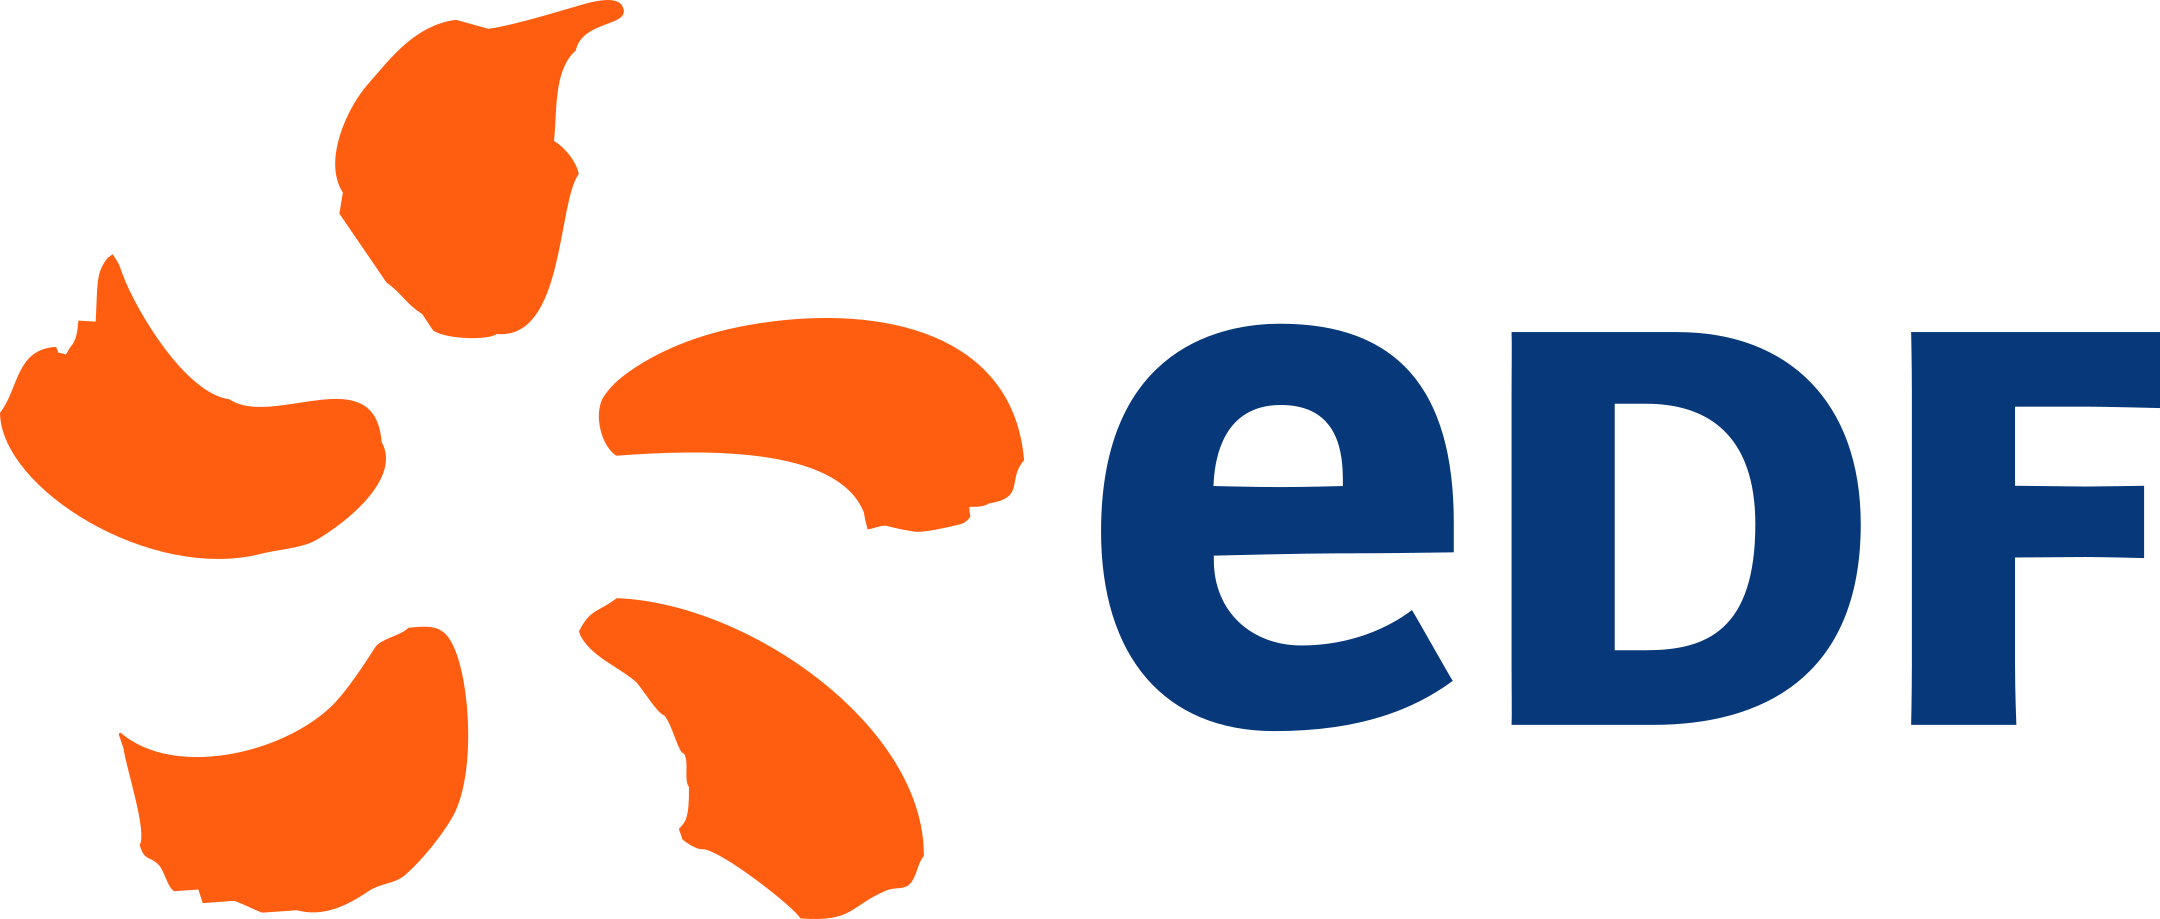 edf logo 1 - EDF Logo